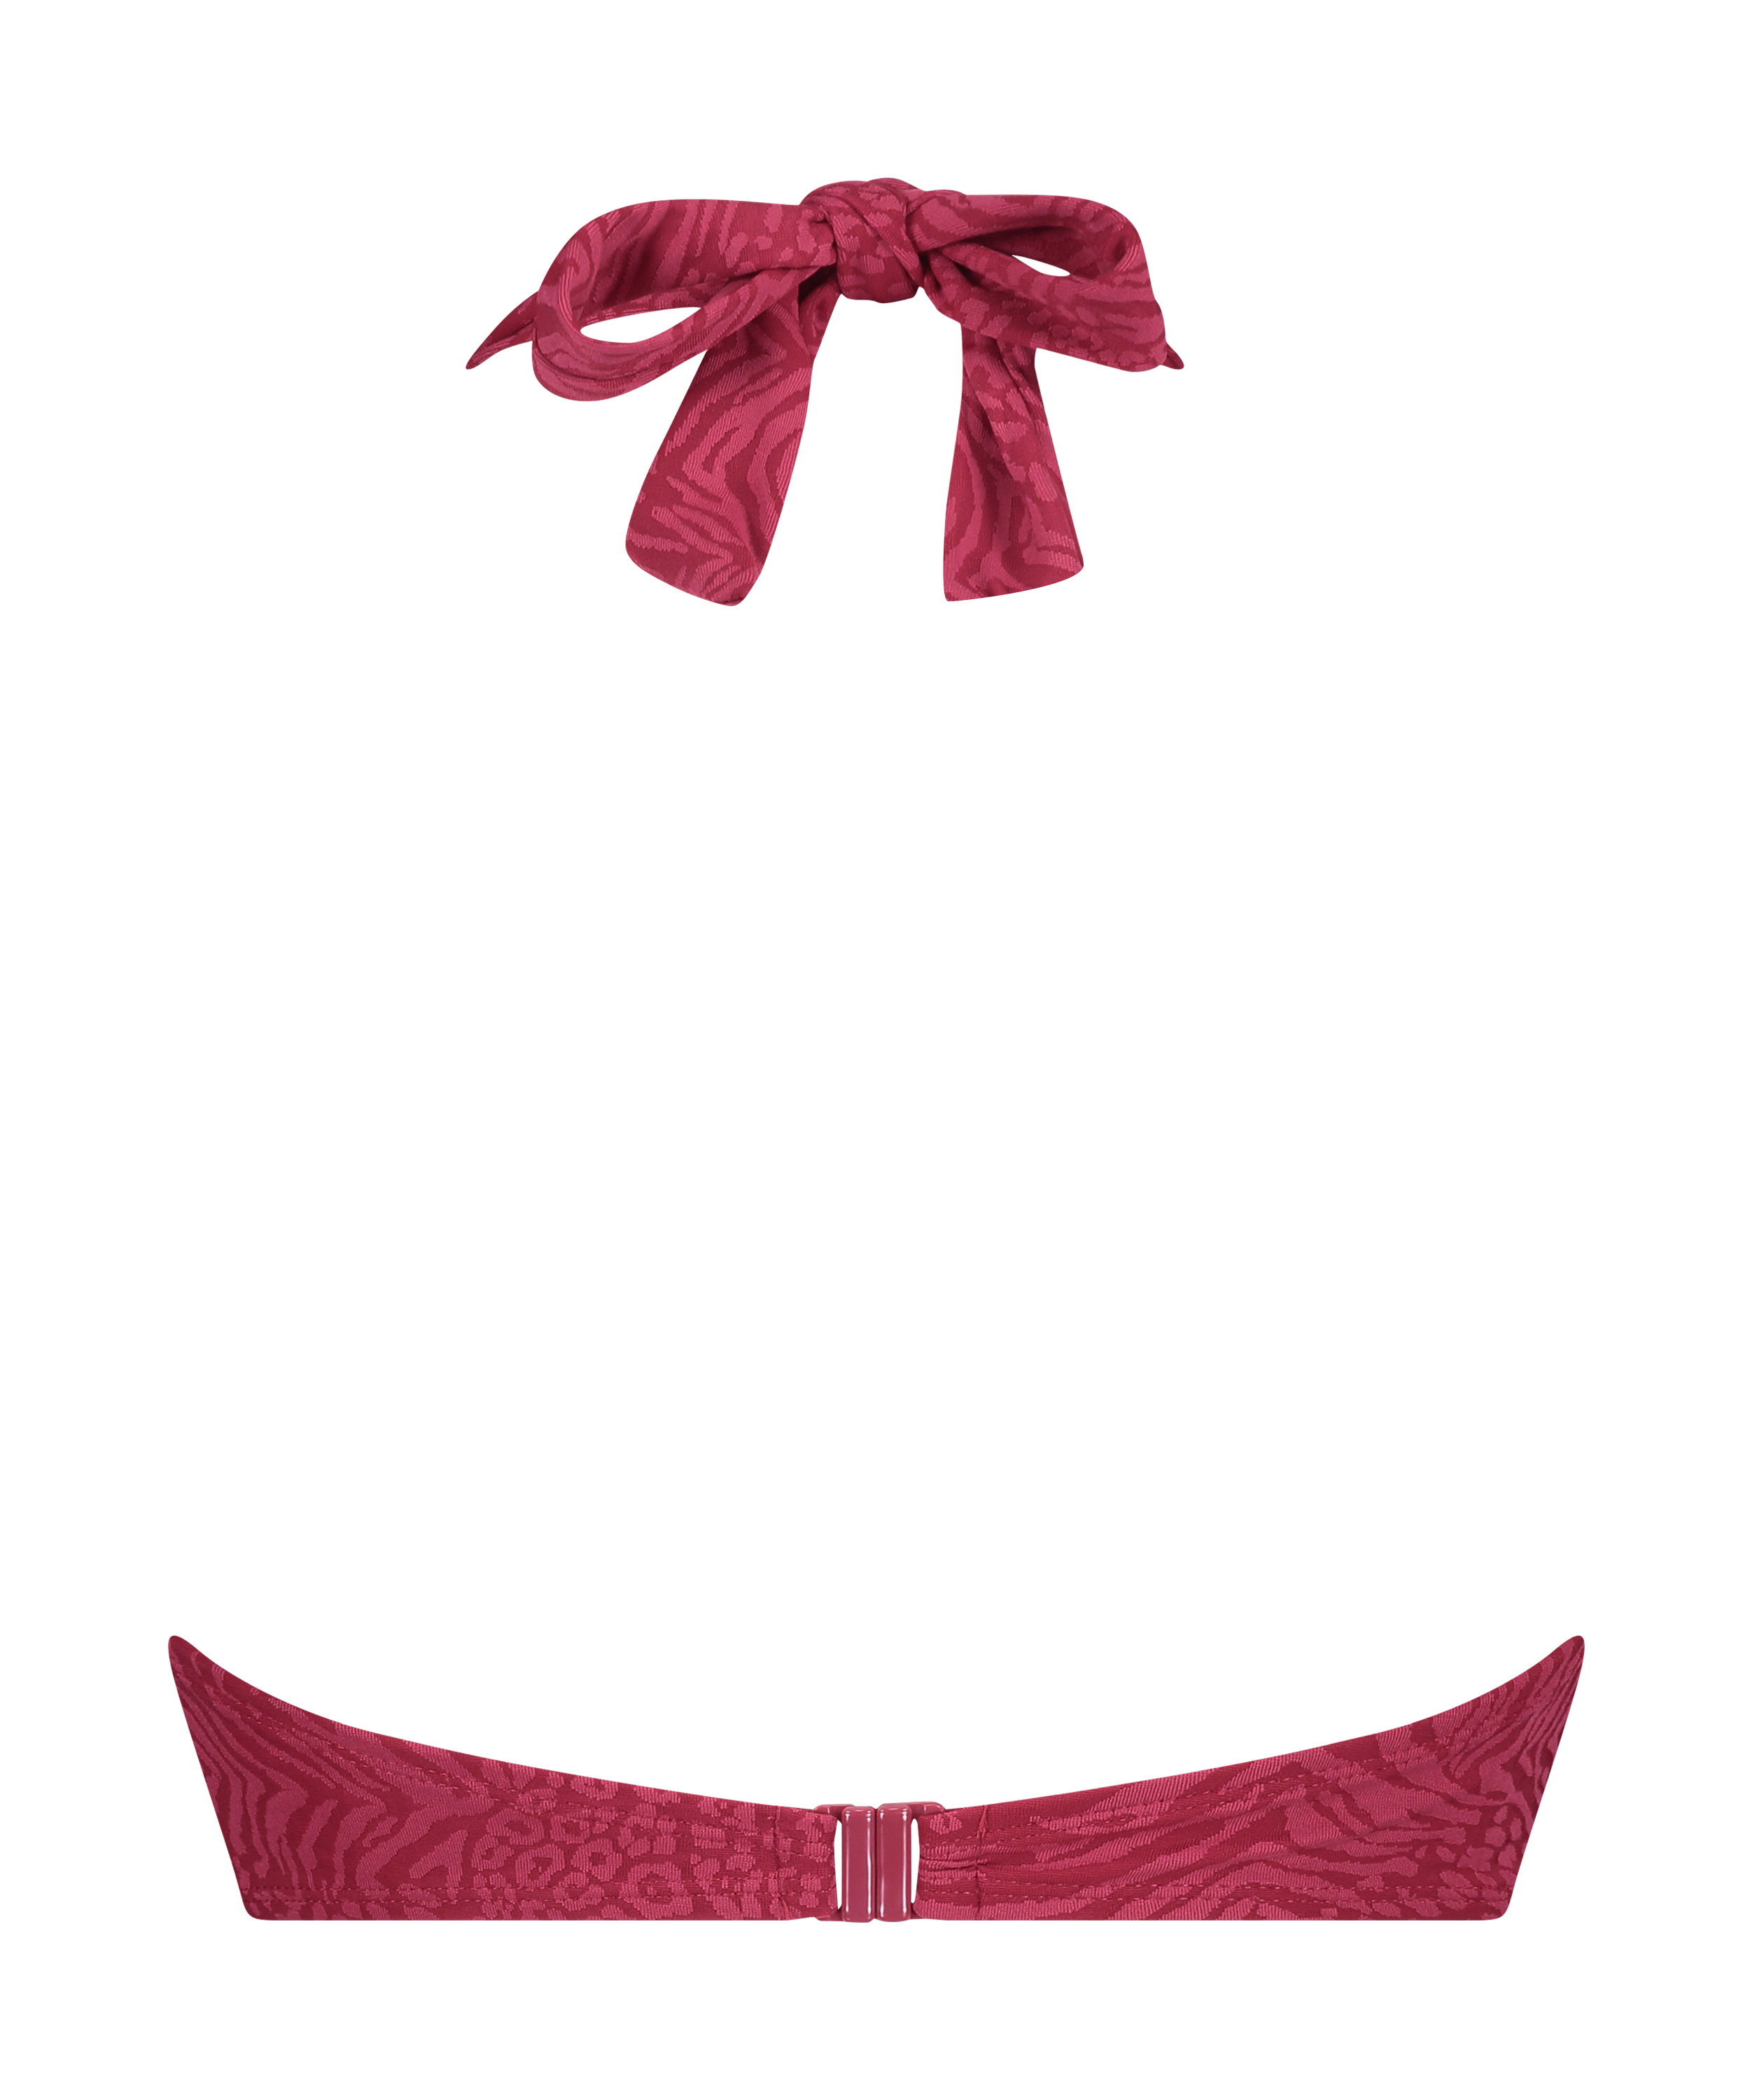 Vorgeformtes Push-up Bügel-Bikini-Top Kai, Rot, main